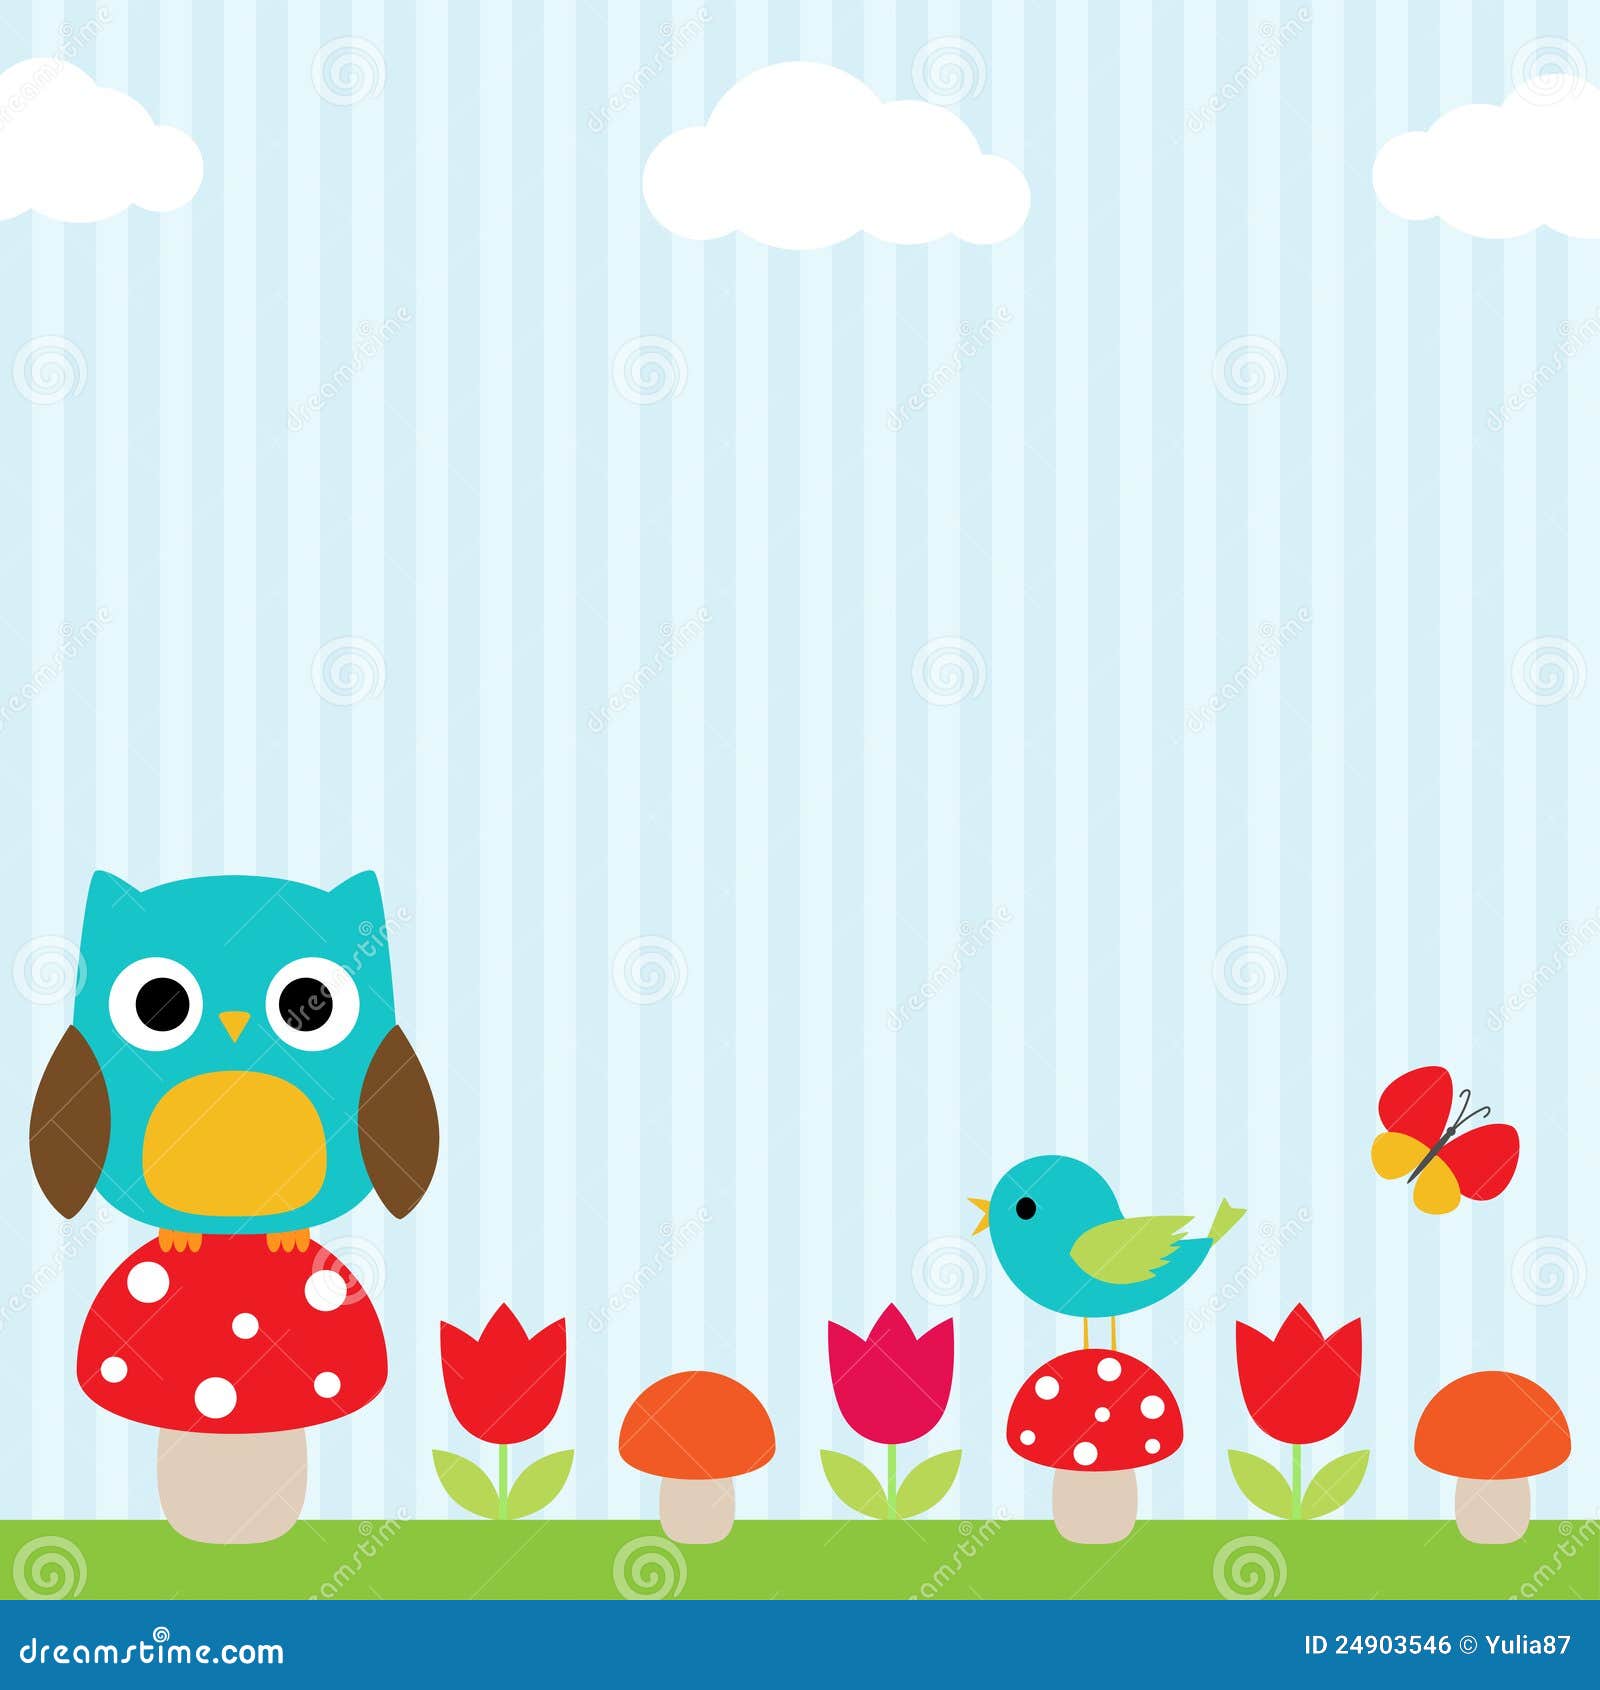 Owl Background Royalty Free Stock Image - Image: 24903546